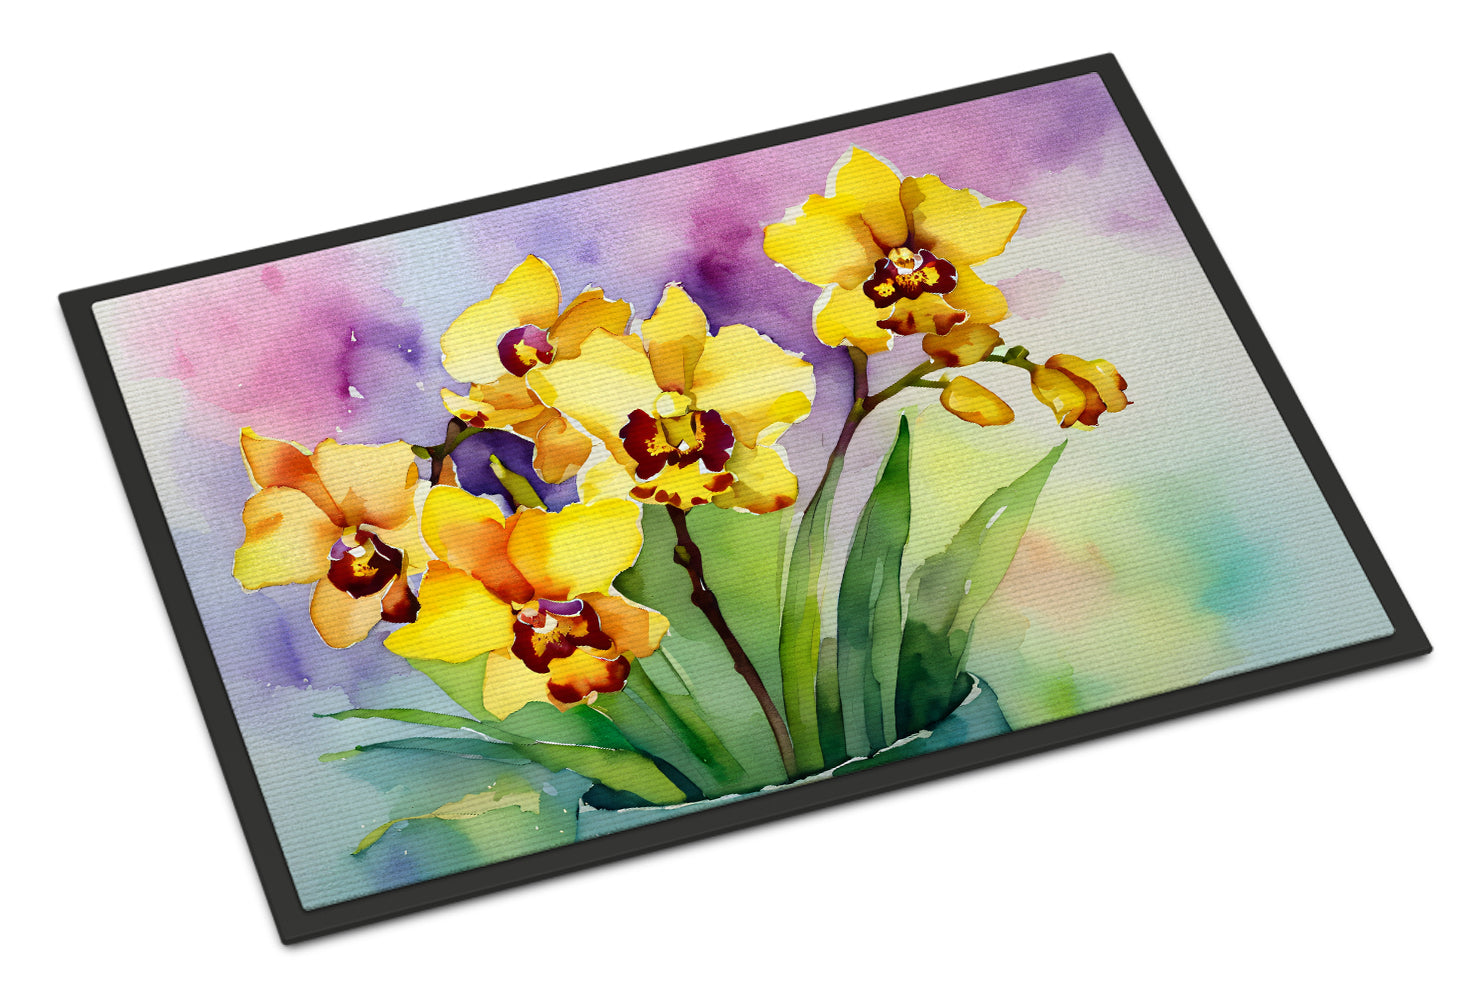 Buy this Orchids in Watercolor Doormat 18x27